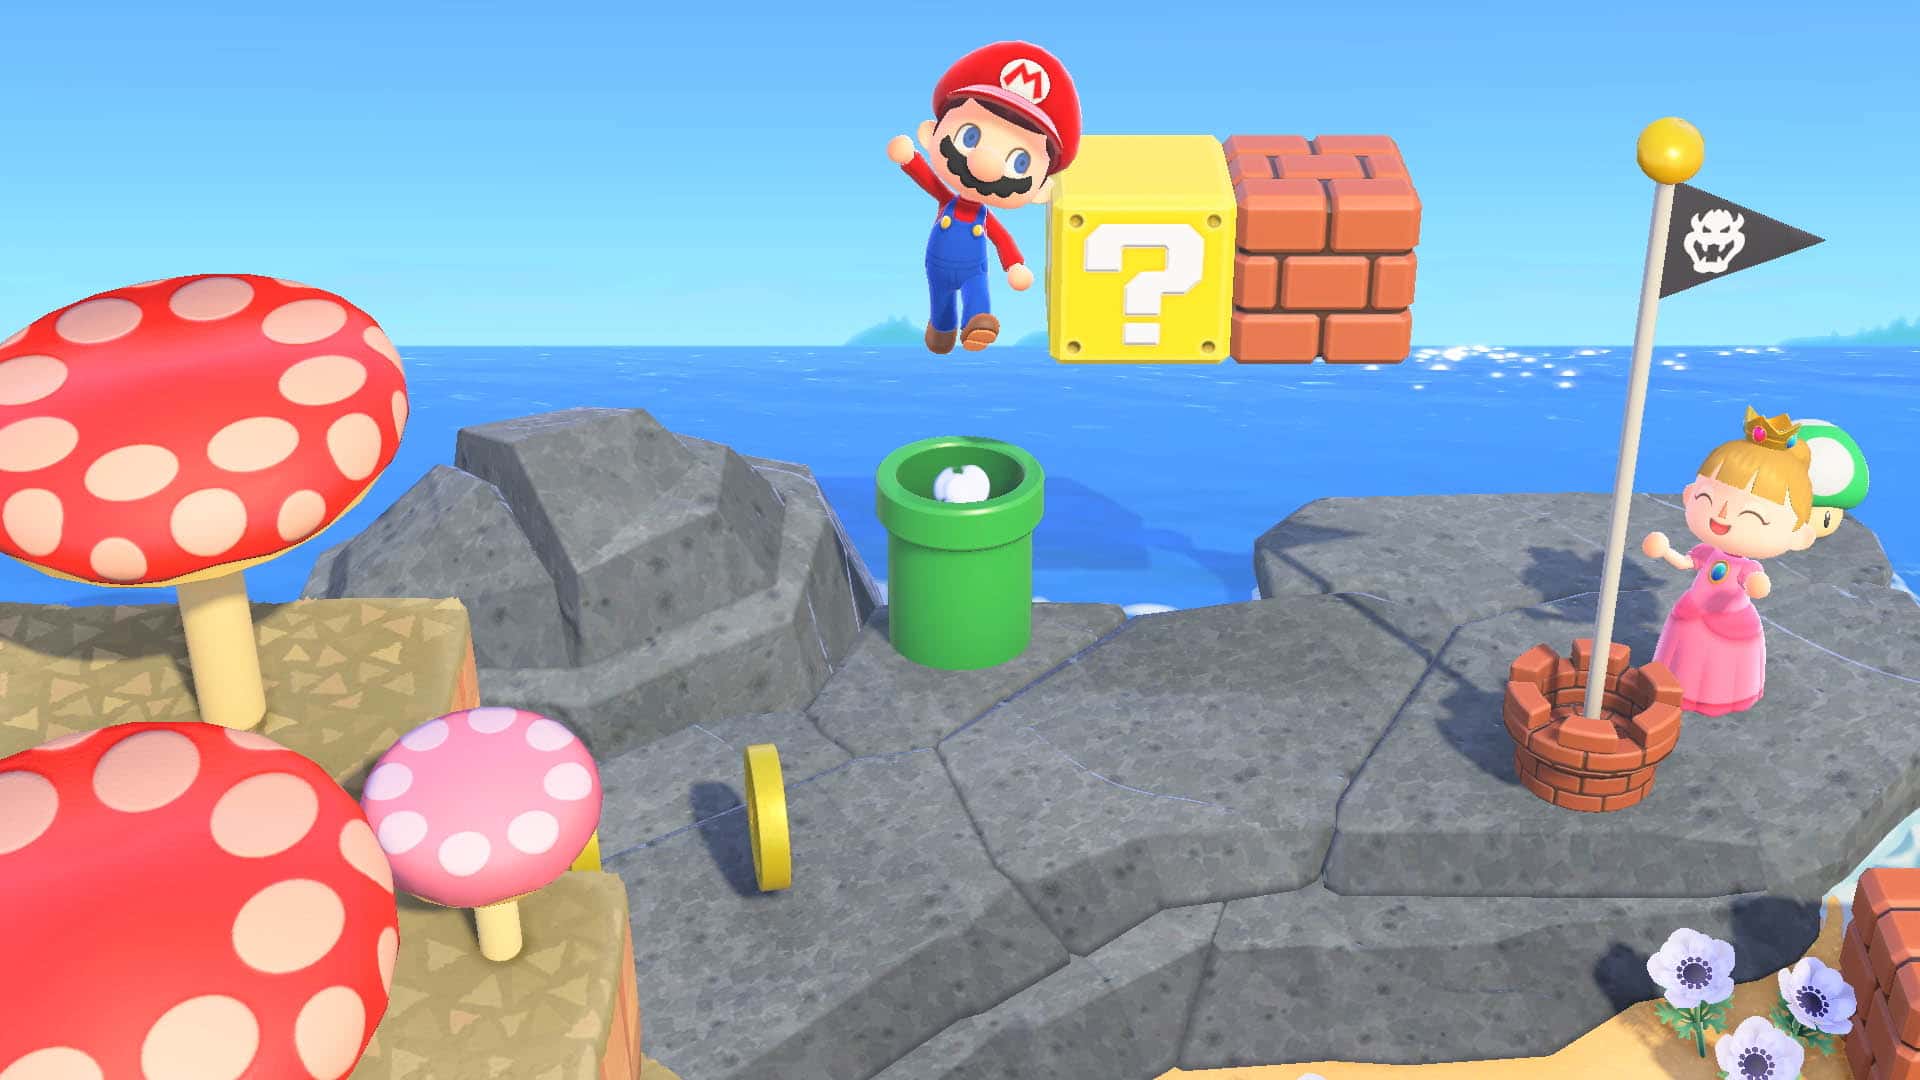 Echa un vistazo a este laberinto de Mario elaborado en Animal Crossing: New Horizons